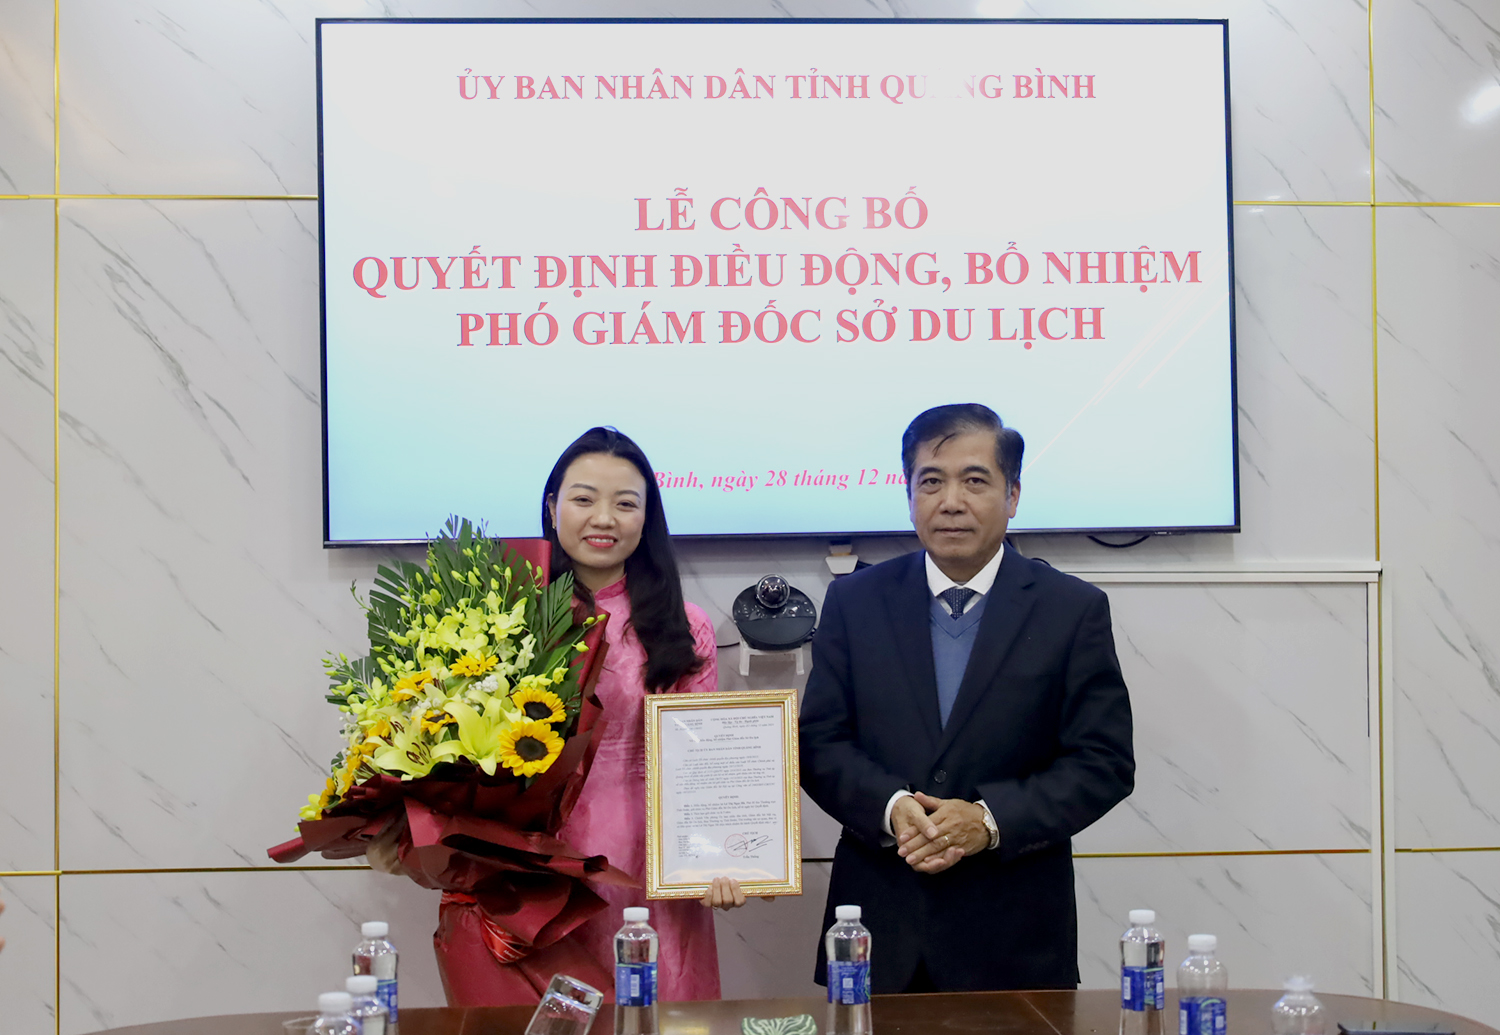 Đồng chí Phó Chủ tịch Thường trực UBND tỉnh Đoàn Ngọc Lâm trao quyết định bổ nhiệm Phó Giám đốc Sở Du lịch cho đồng chí Lê Thị Ngọc Hà.